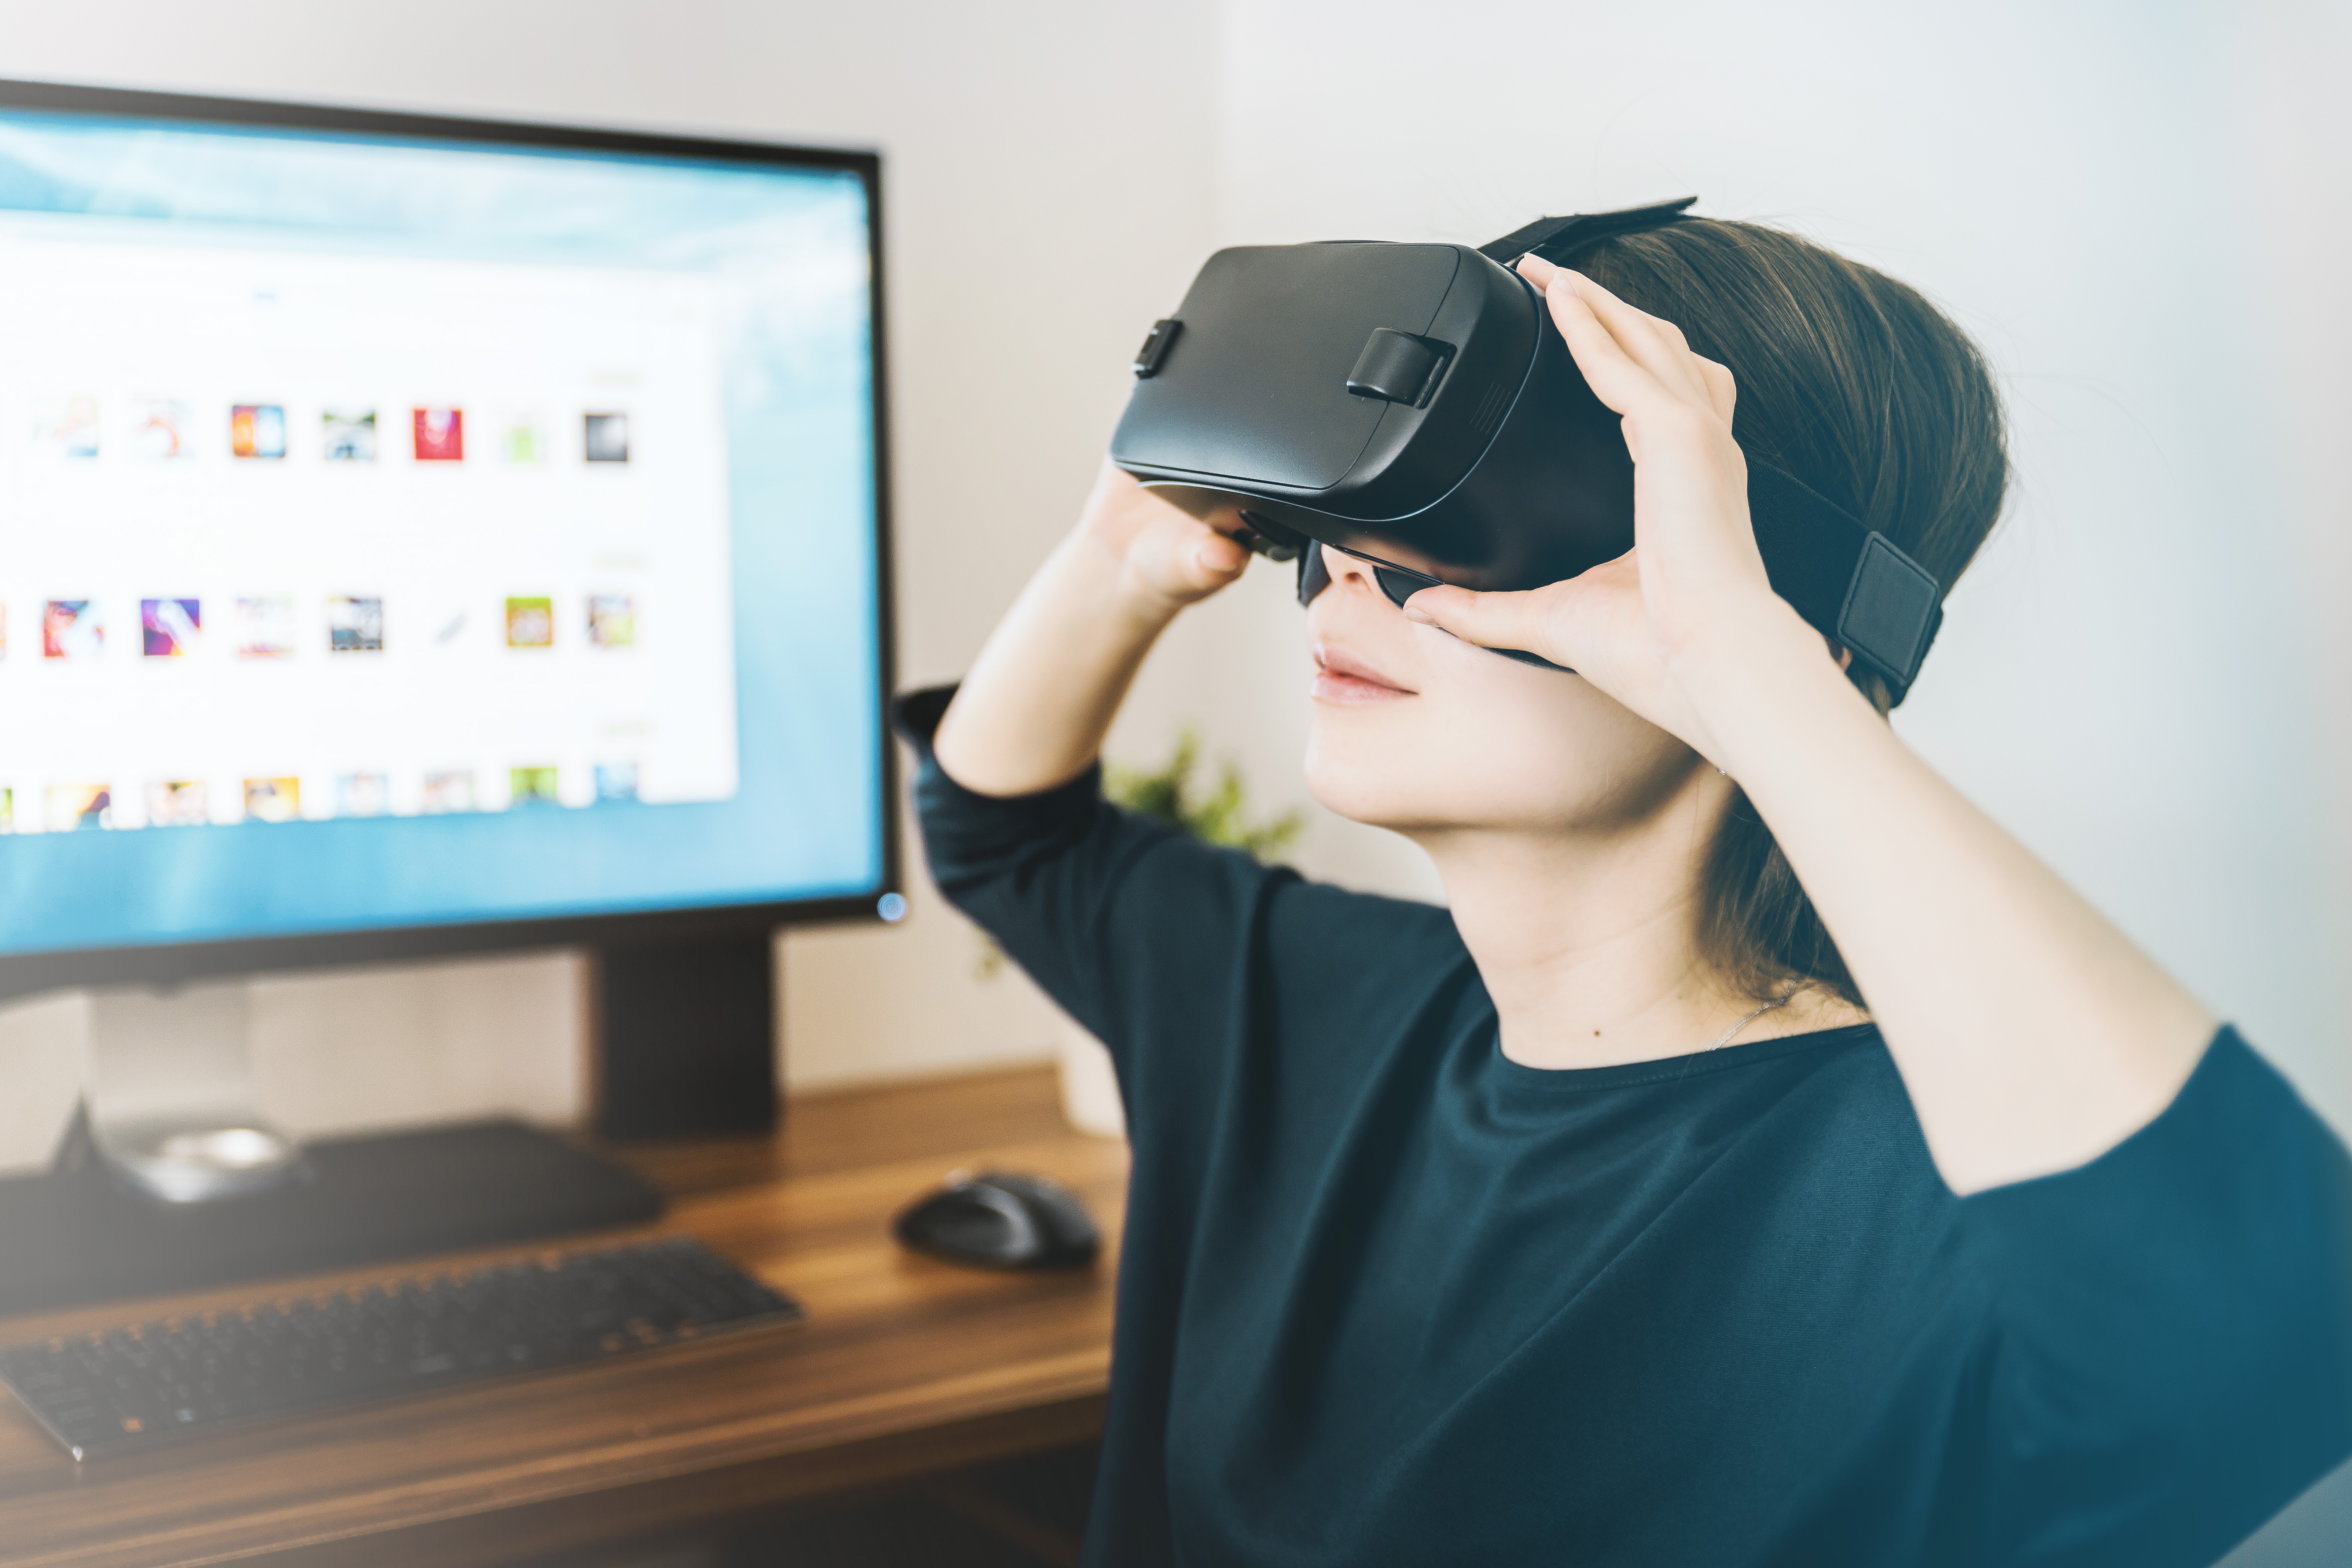 VR headset - Udviklingen af VR indtil videre og hvad det kan føre til